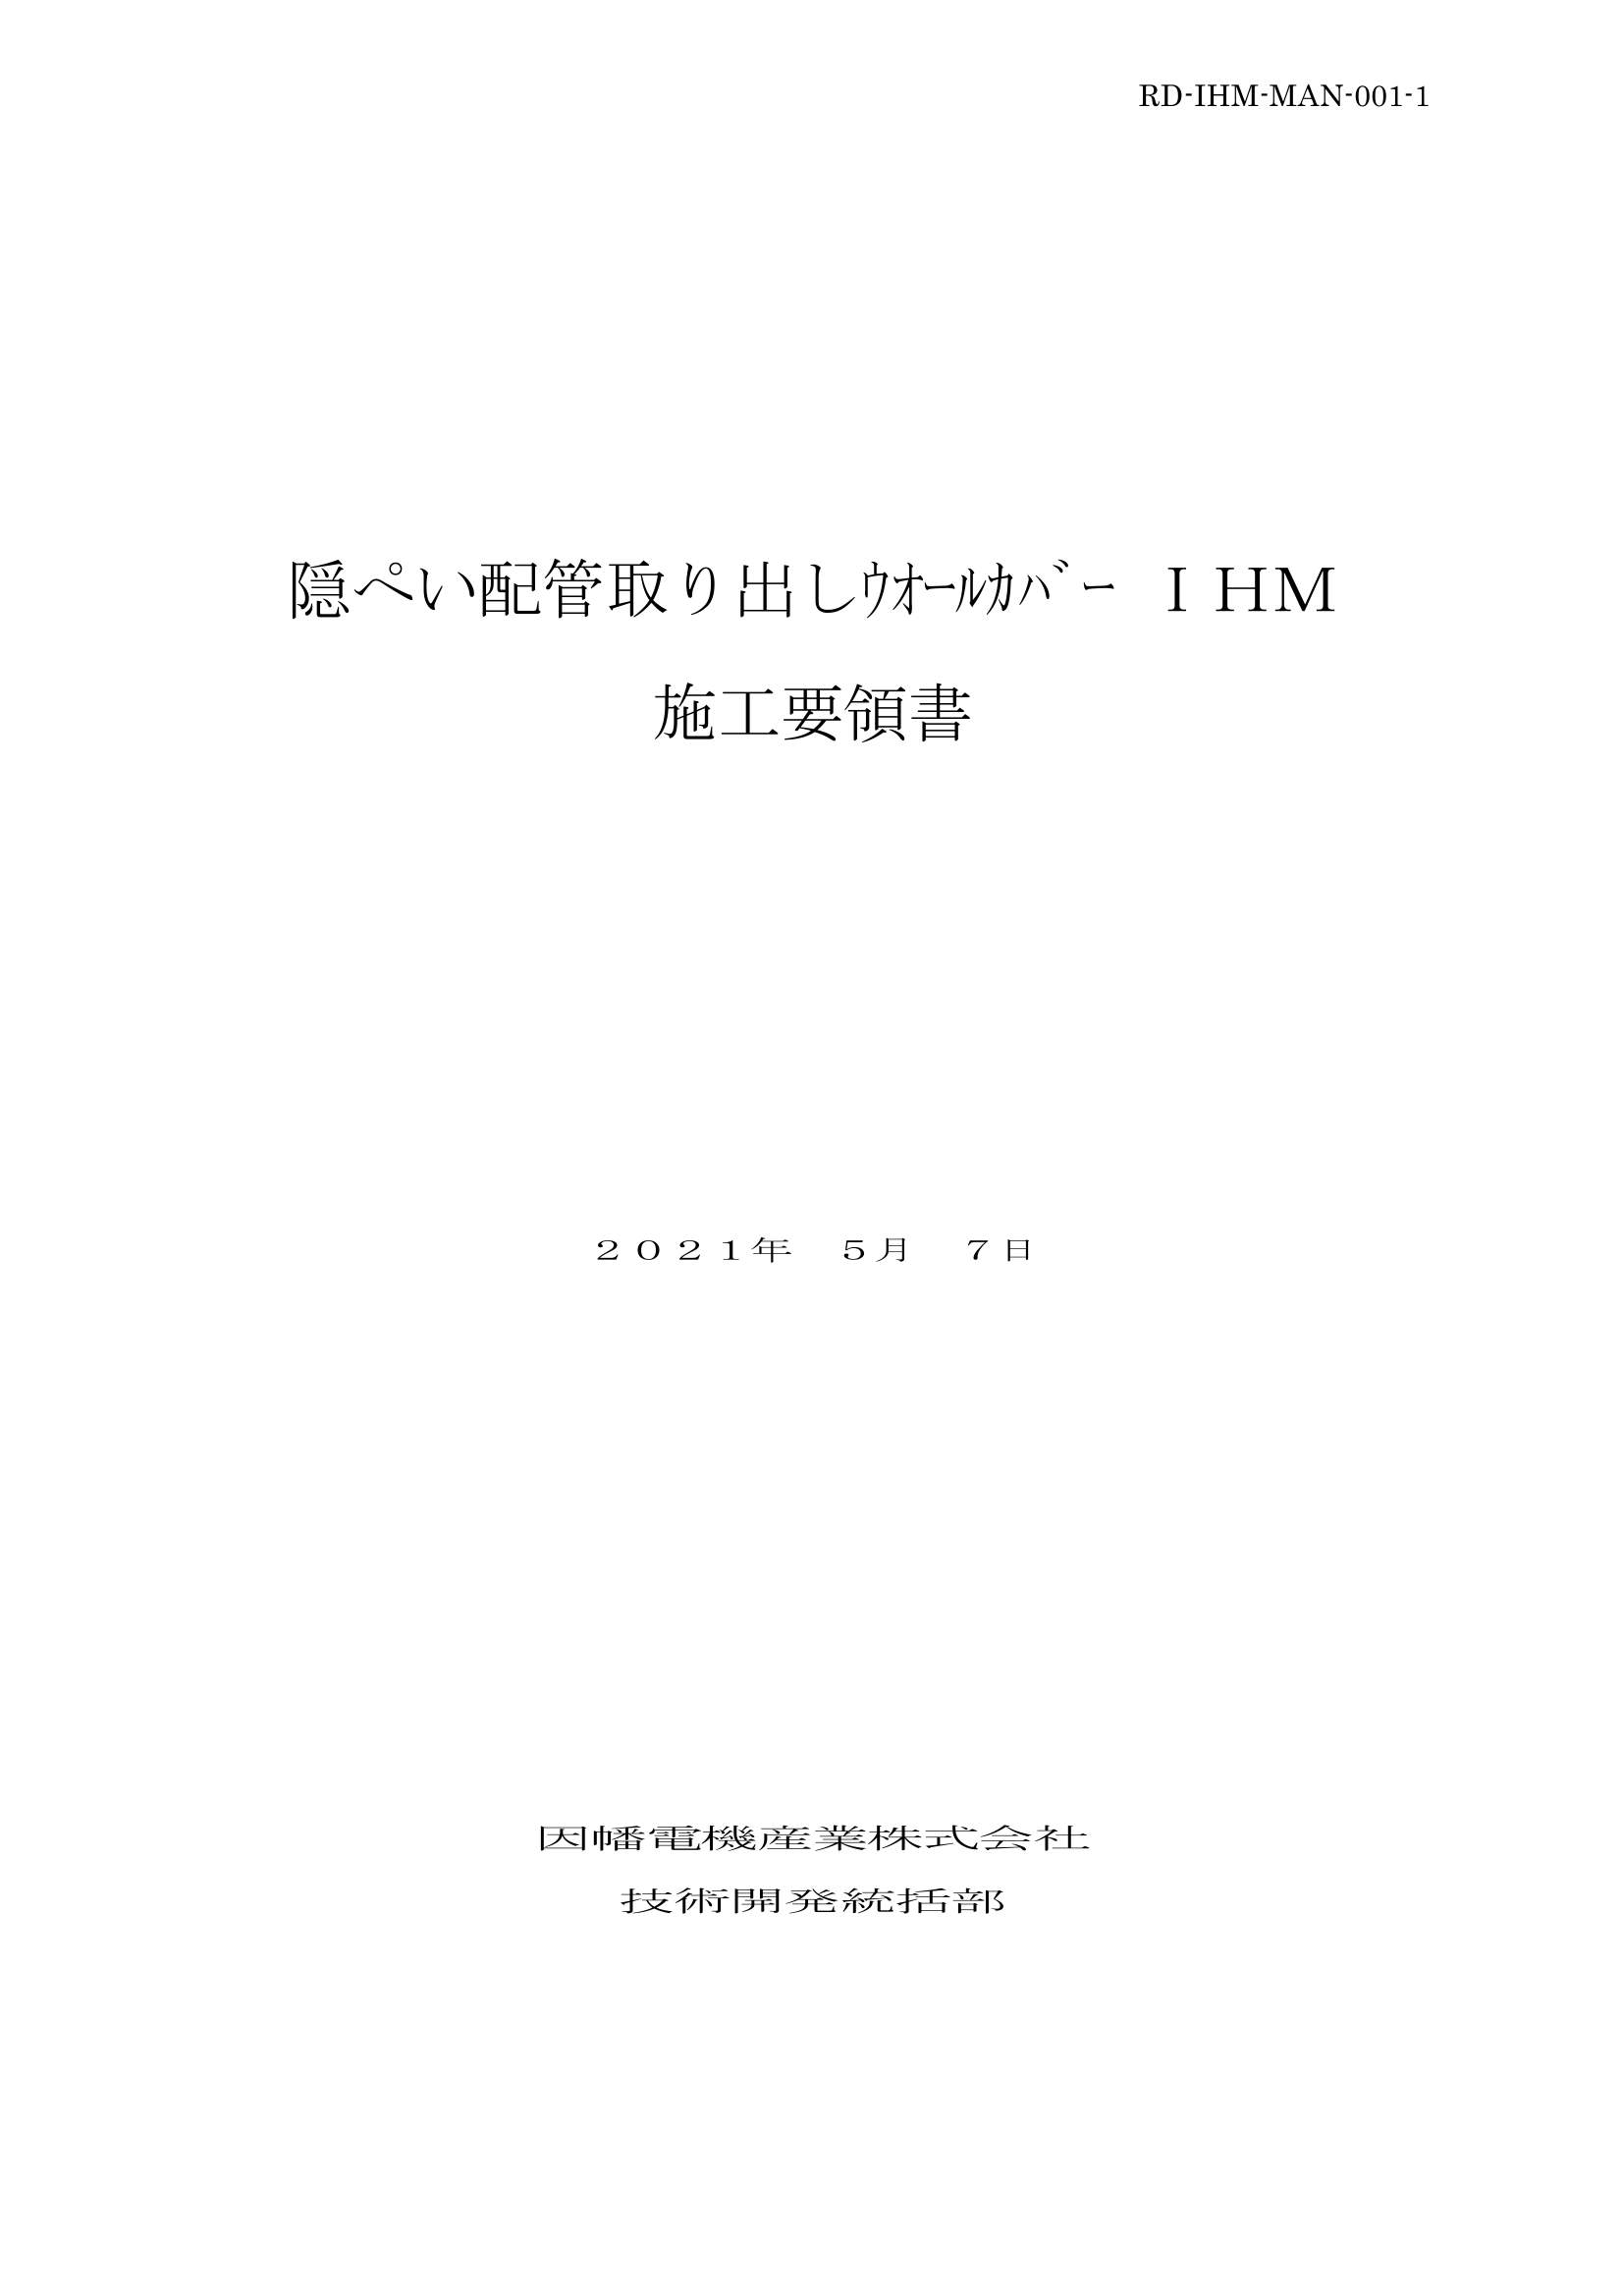 IHM_施工要領書_20210507.pdf